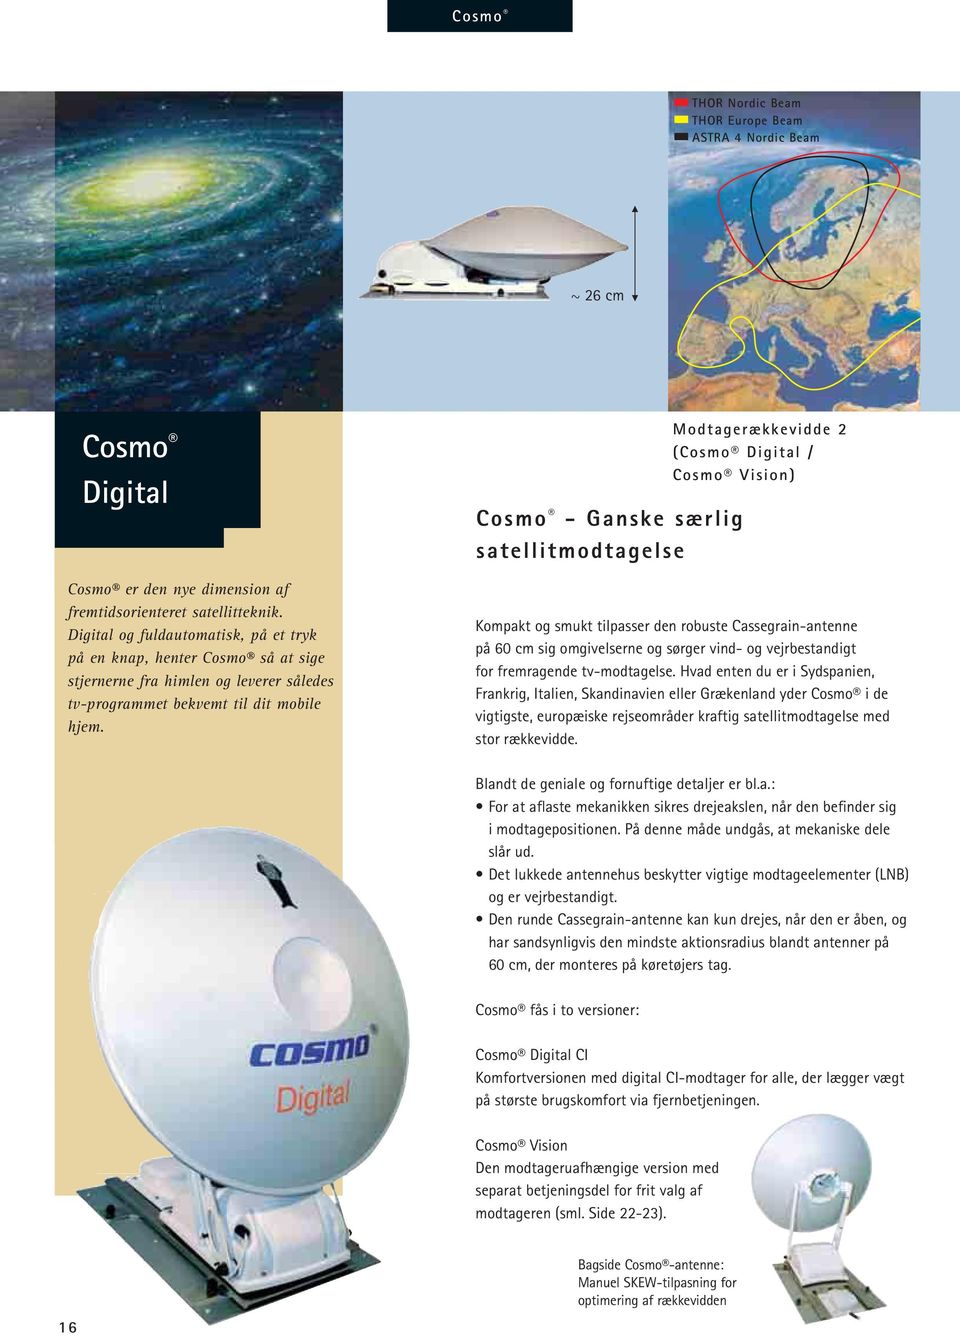 Cosmo - Ganske særlig satellitmodtagelse Modtagerækkevidde 2 (Cosmo Digital / Cosmo Vision) Kompakt og smukt tilpasser den robuste Cassegrain-antenne på 60 cm sig omgivelserne og sørger vind- og